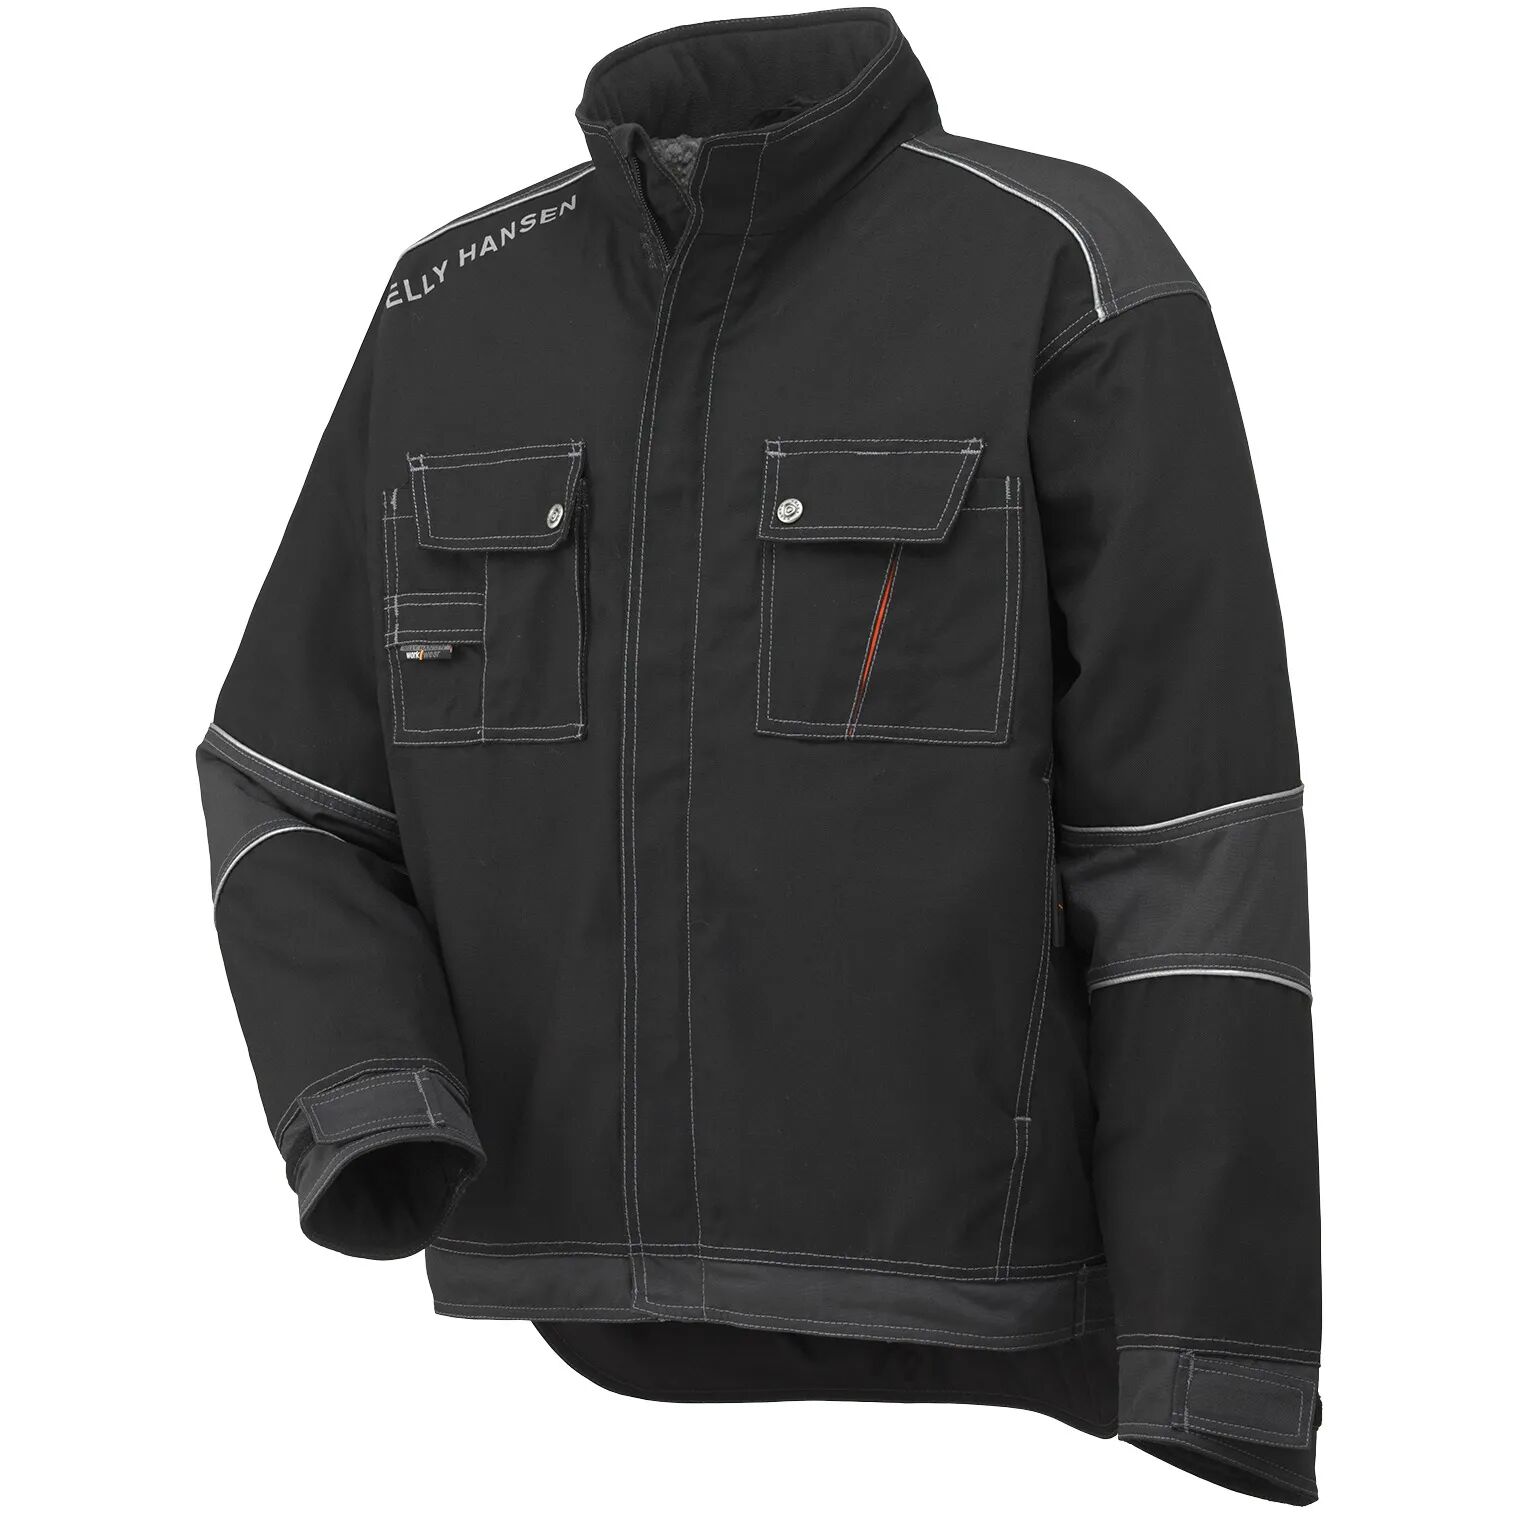 HH Workwear Helly Hansen WorkwearChelsea Insulated Winter Work Jacket Black XXXXL